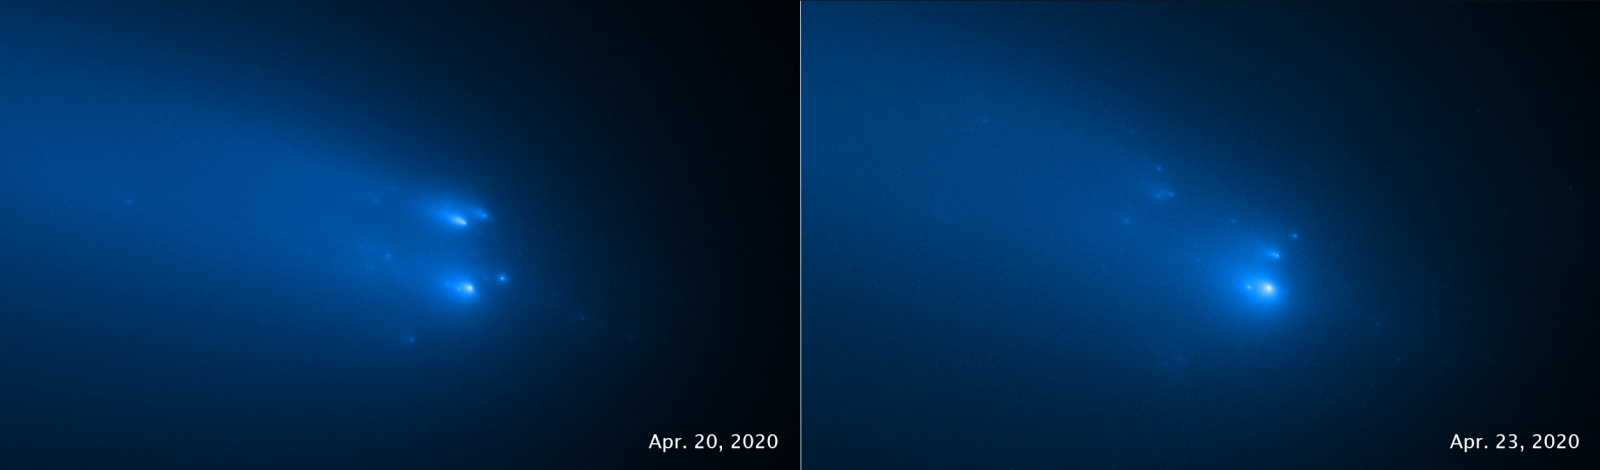 Gli scatti spettacolari immortalano la frammentazione del nucleo della cometa che comunque prosegue il suo viaggio nel Sistema solare interno. È un evento molto raro per gli astronomi, che sperano di ricavare informazioni maggiori sulla dinamica del fenomeno